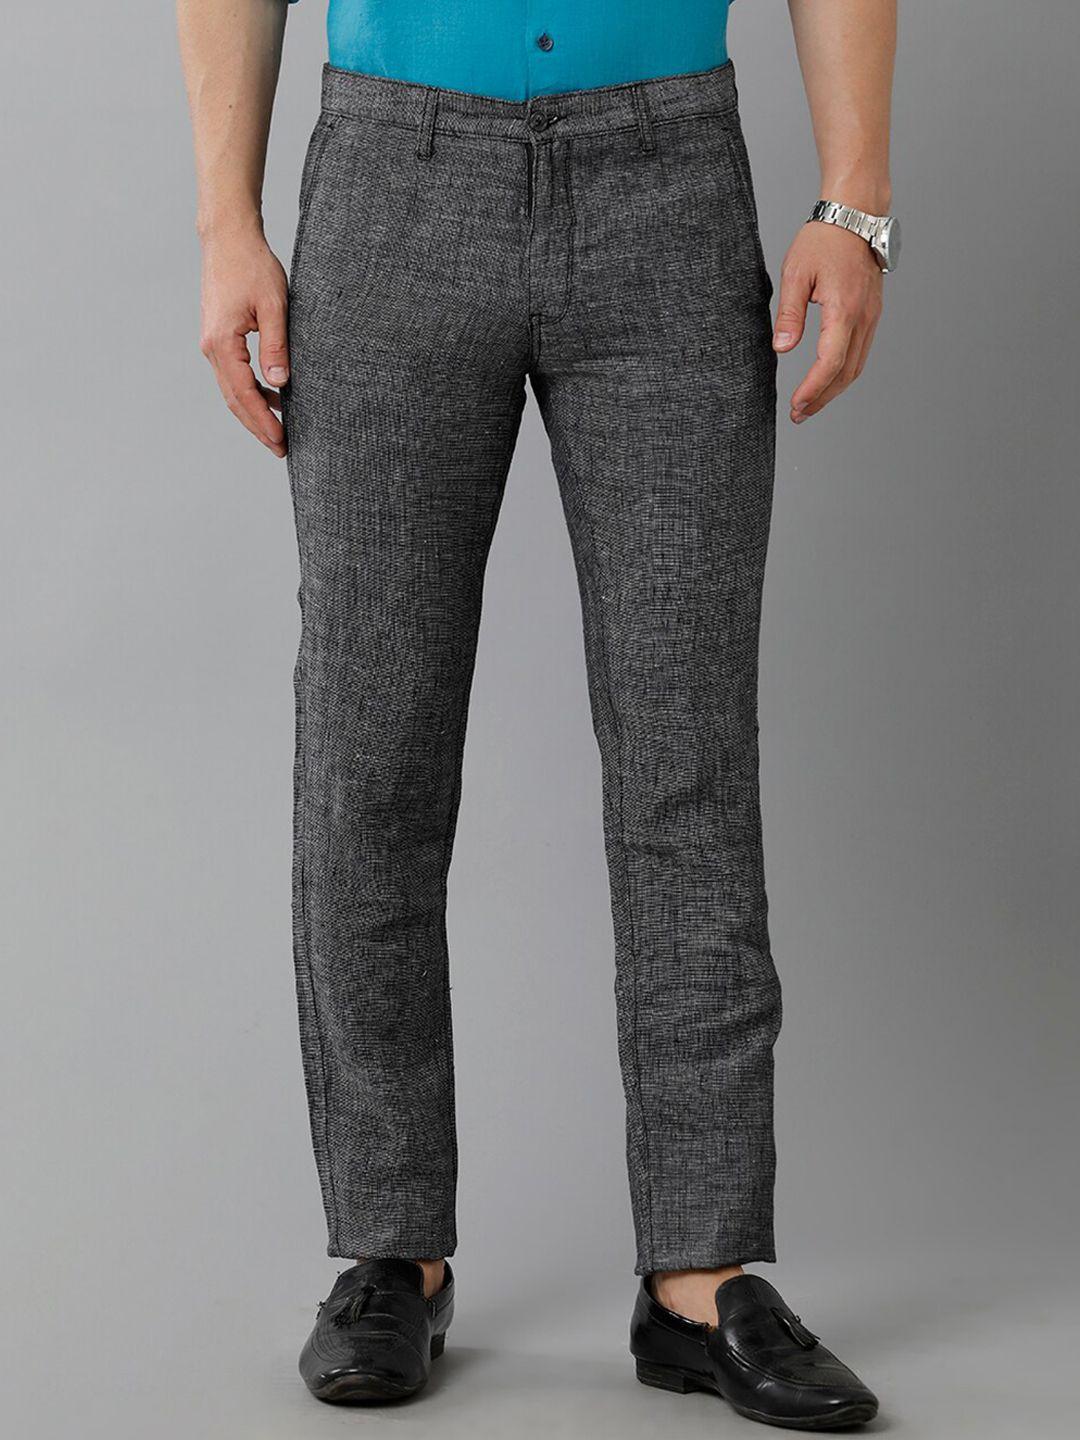 linen-club-men-self-designed-mid-rise-slim-fit-pure-linen-trousers